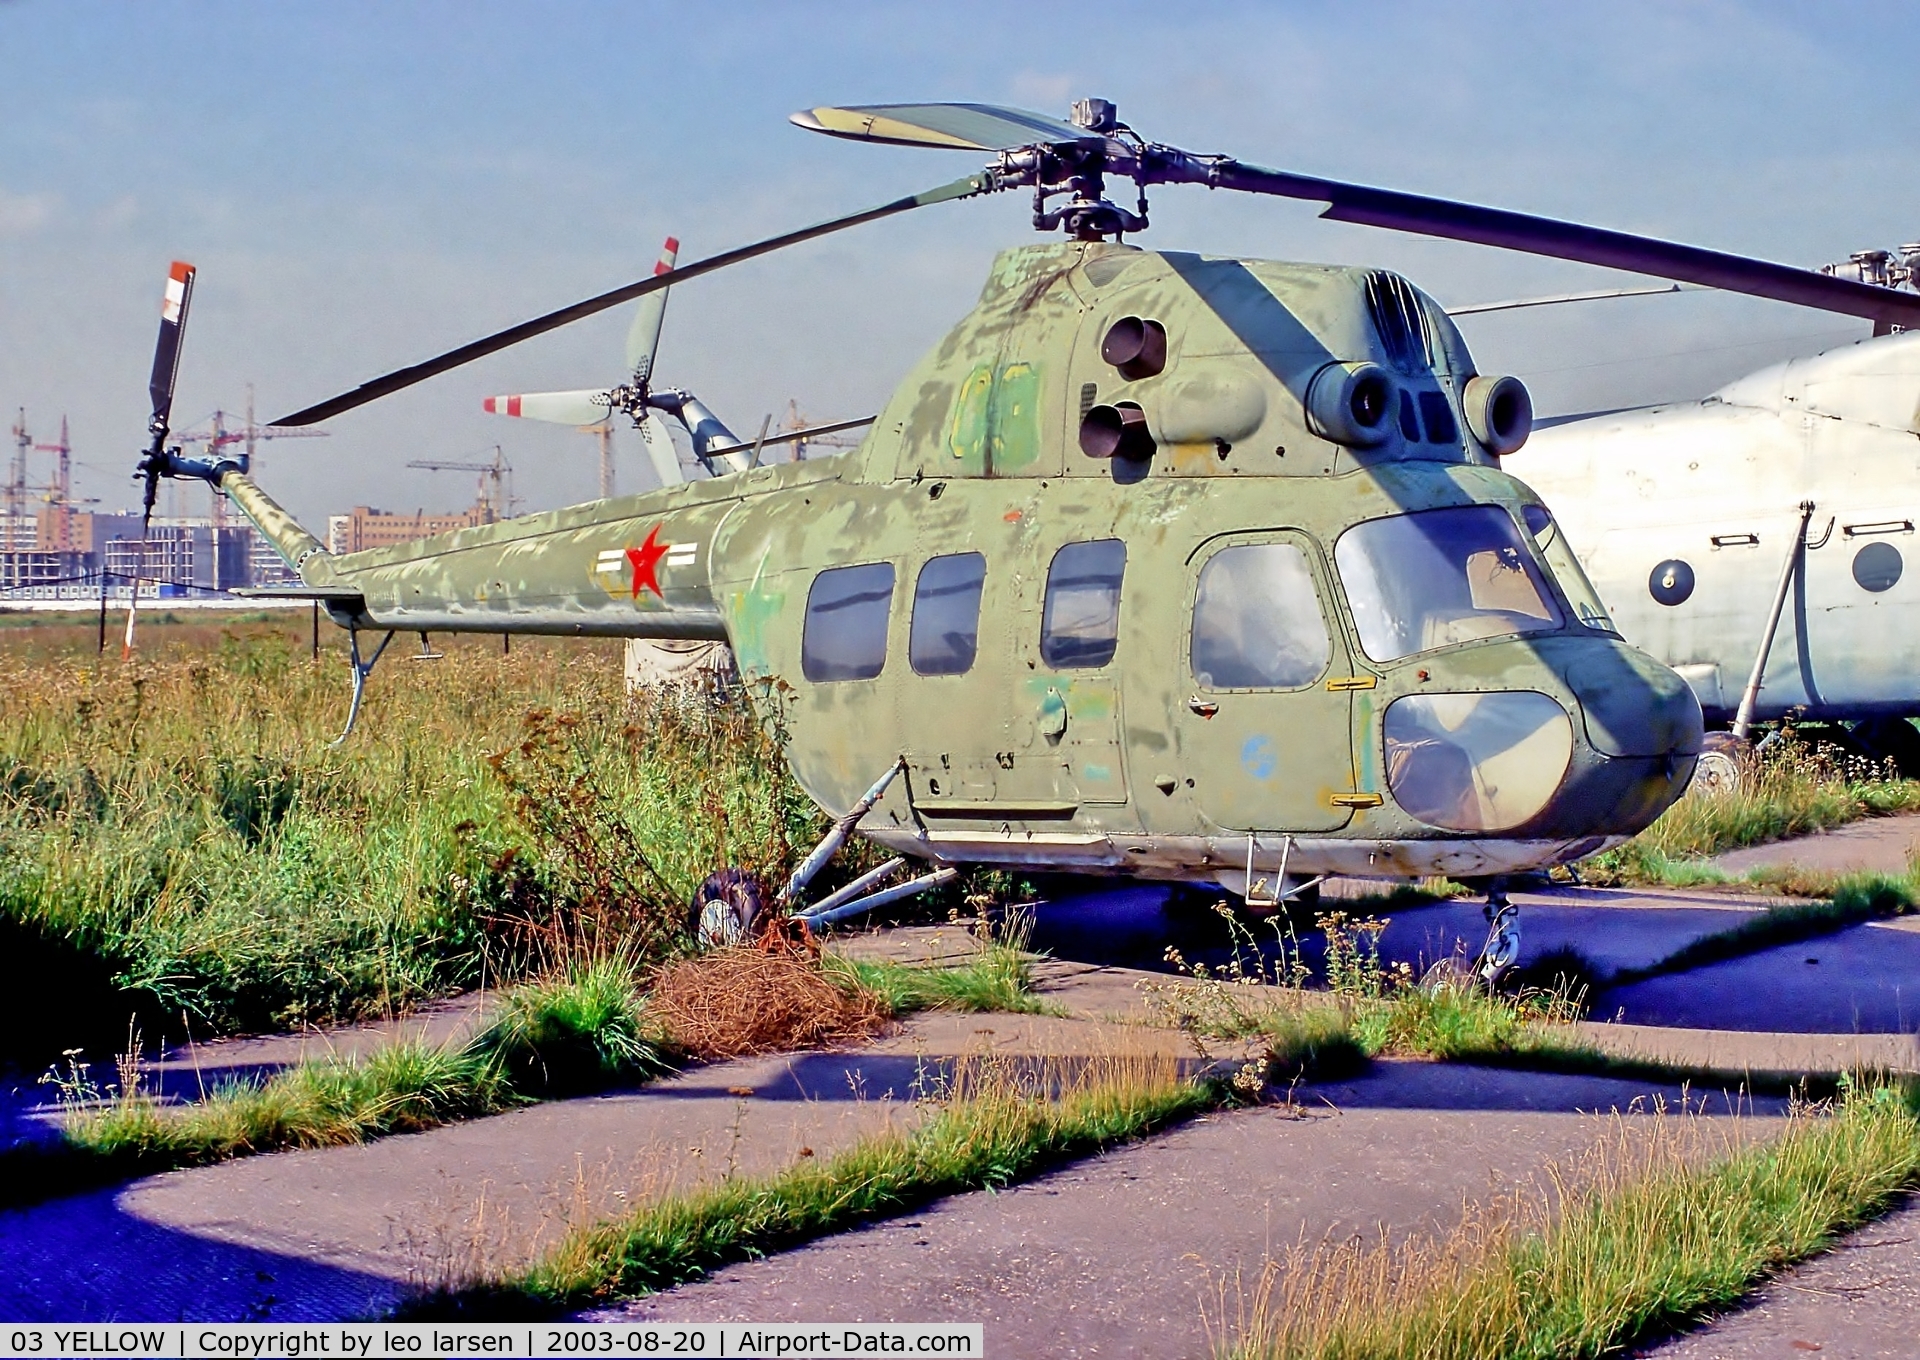 03 YELLOW, 1971 PZL-Swidnik Mi-2 C/N 51 1835 031, Khodinka Moscow with USAF rondel 20.8.03